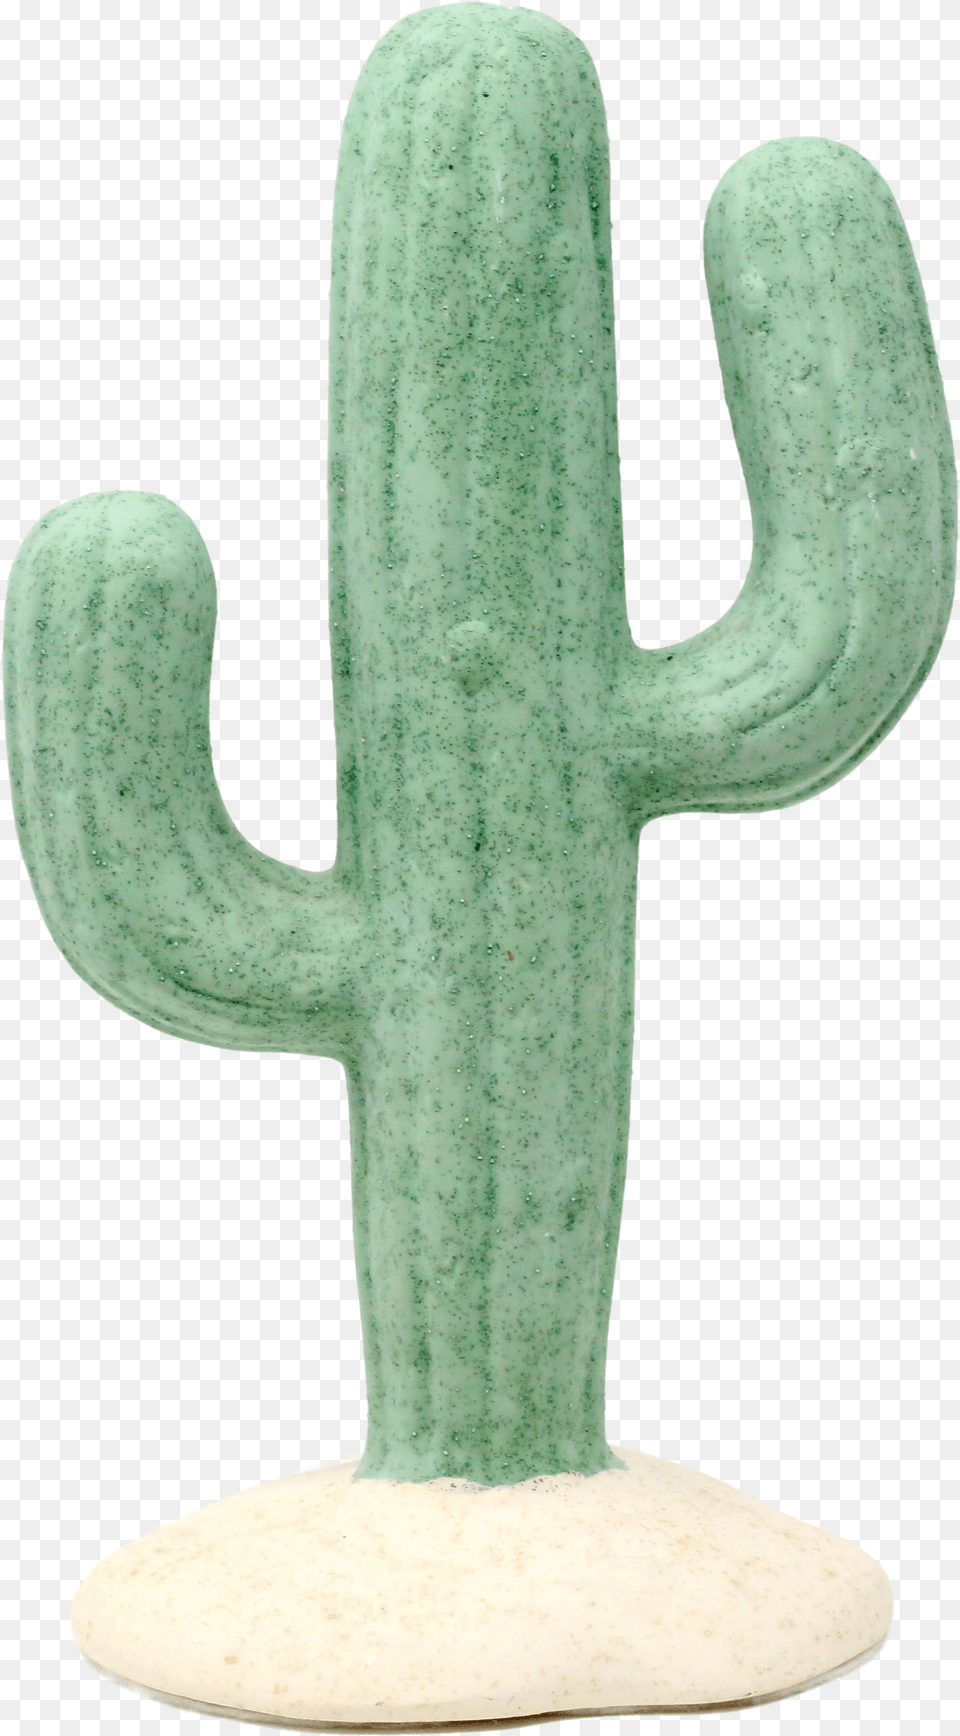 Ceramic Saguaro Cactus Figurine Toy Png